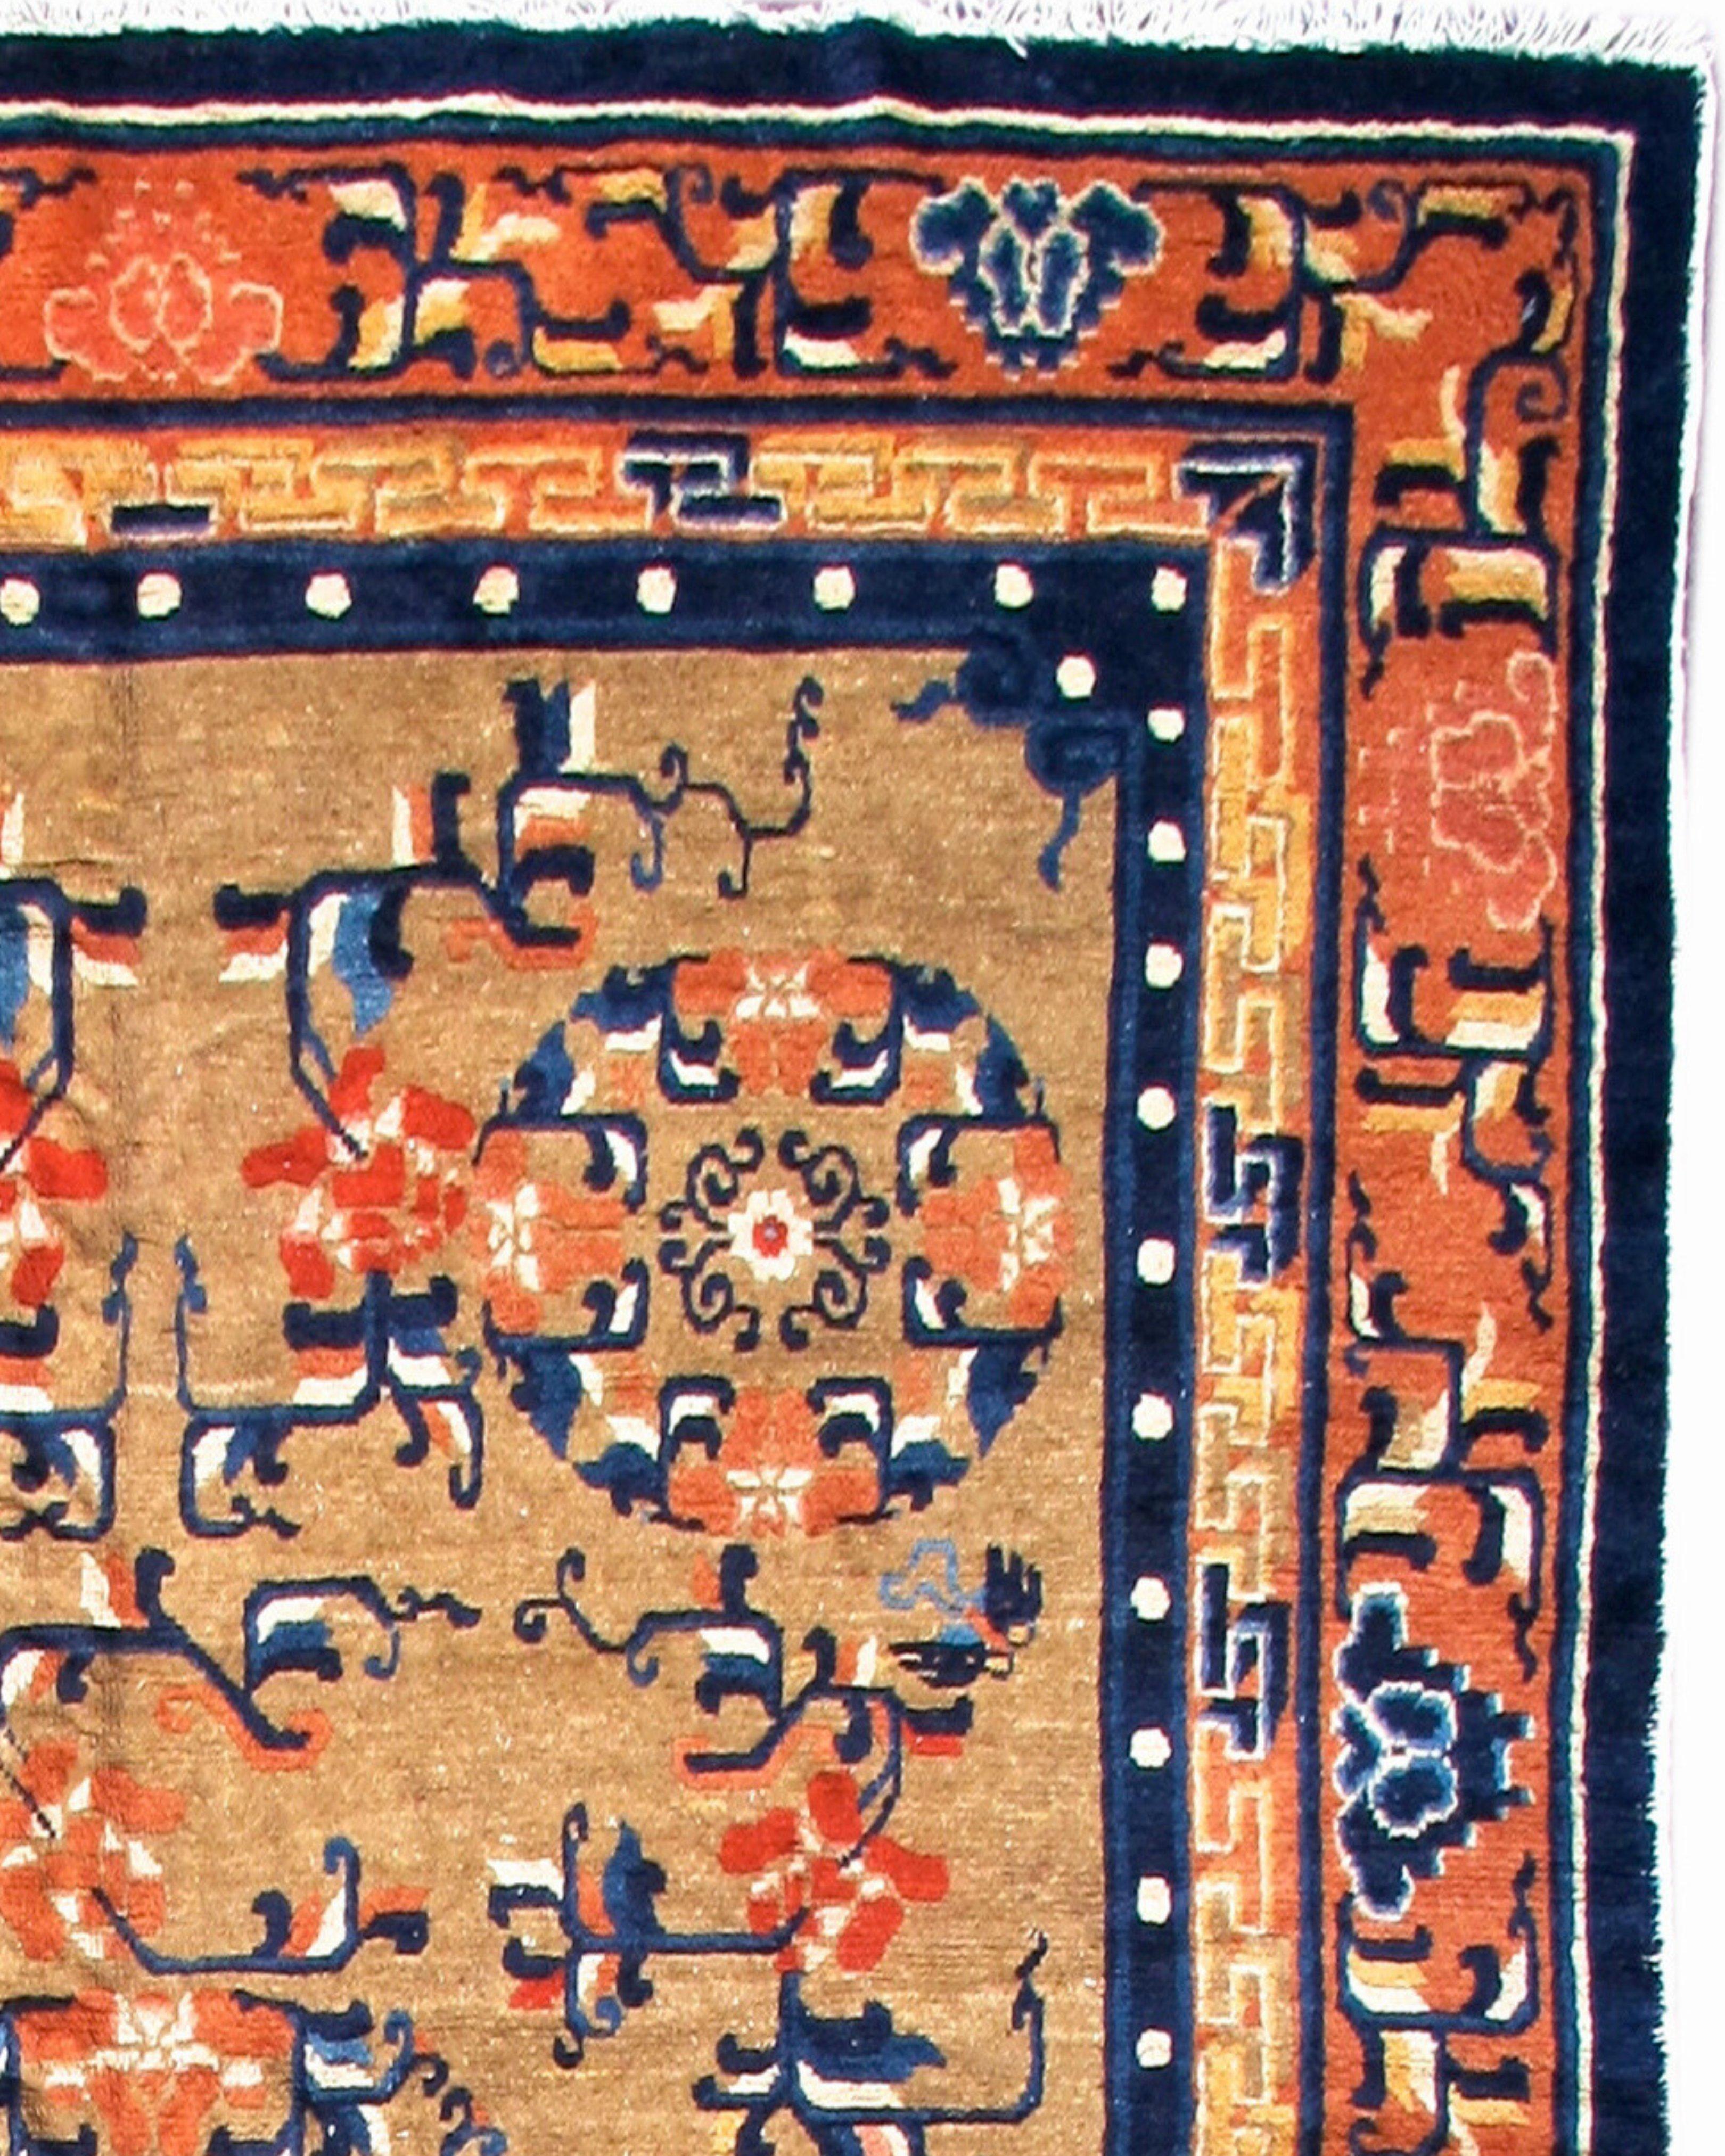 Ancien tapis chinois Ningxia, fin du 19e siècle

Cet élégant tapis chinois de Ningxia dessine un rondeau central composé de lotus flanqué de rondeaux légèrement plus petits du même type dans une formation 2-1-2. La trame de vigne intercalée dans le